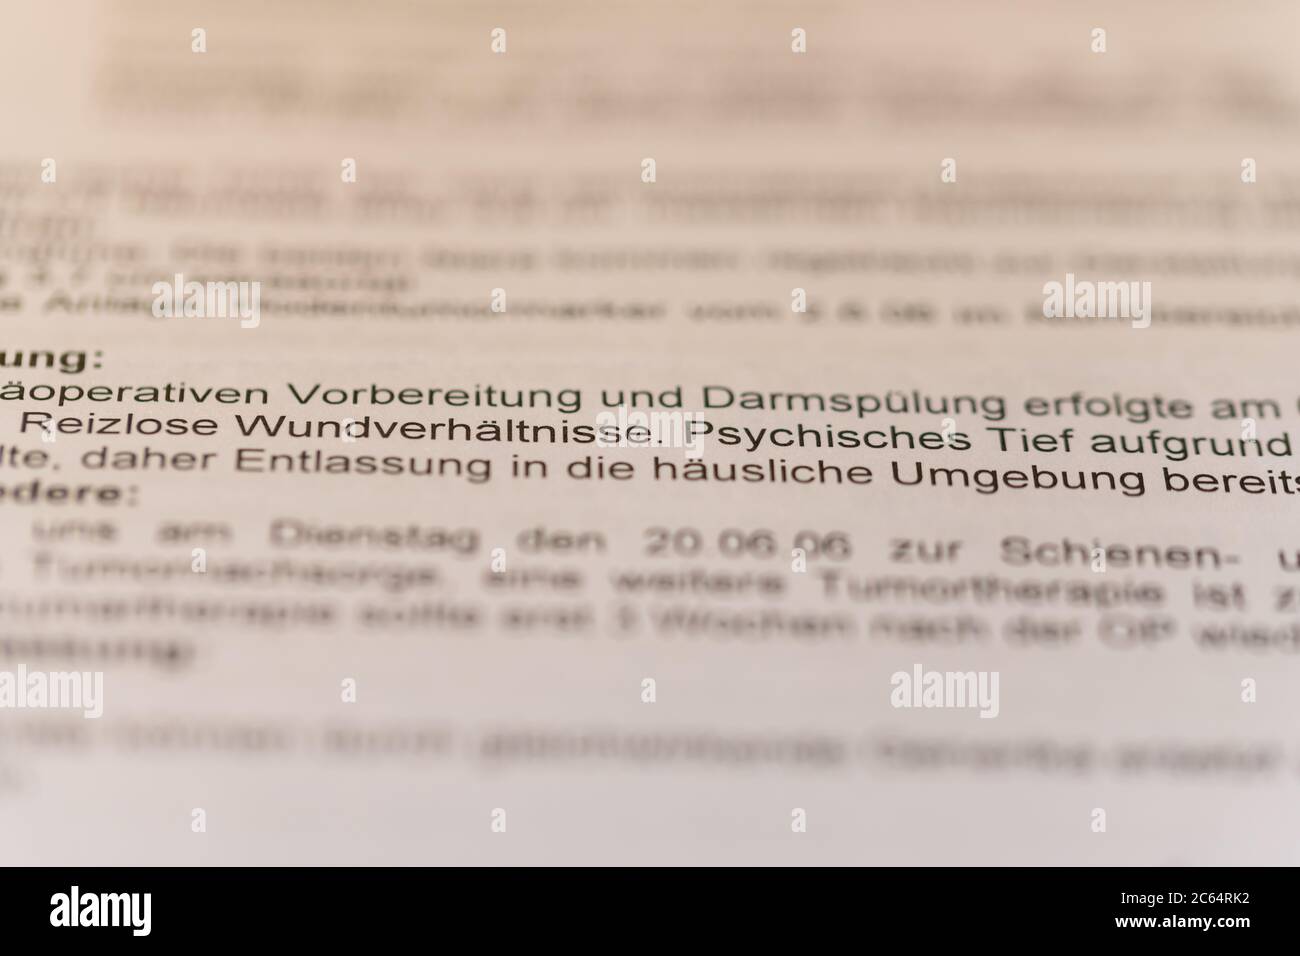 Hude,  Deutschland, 7. Juli 2020: Fotos einer Ärztlichen ausführung über eine Krankheit des Patienten mit den Worden im Fokus Phychisches Tief Stock Photo